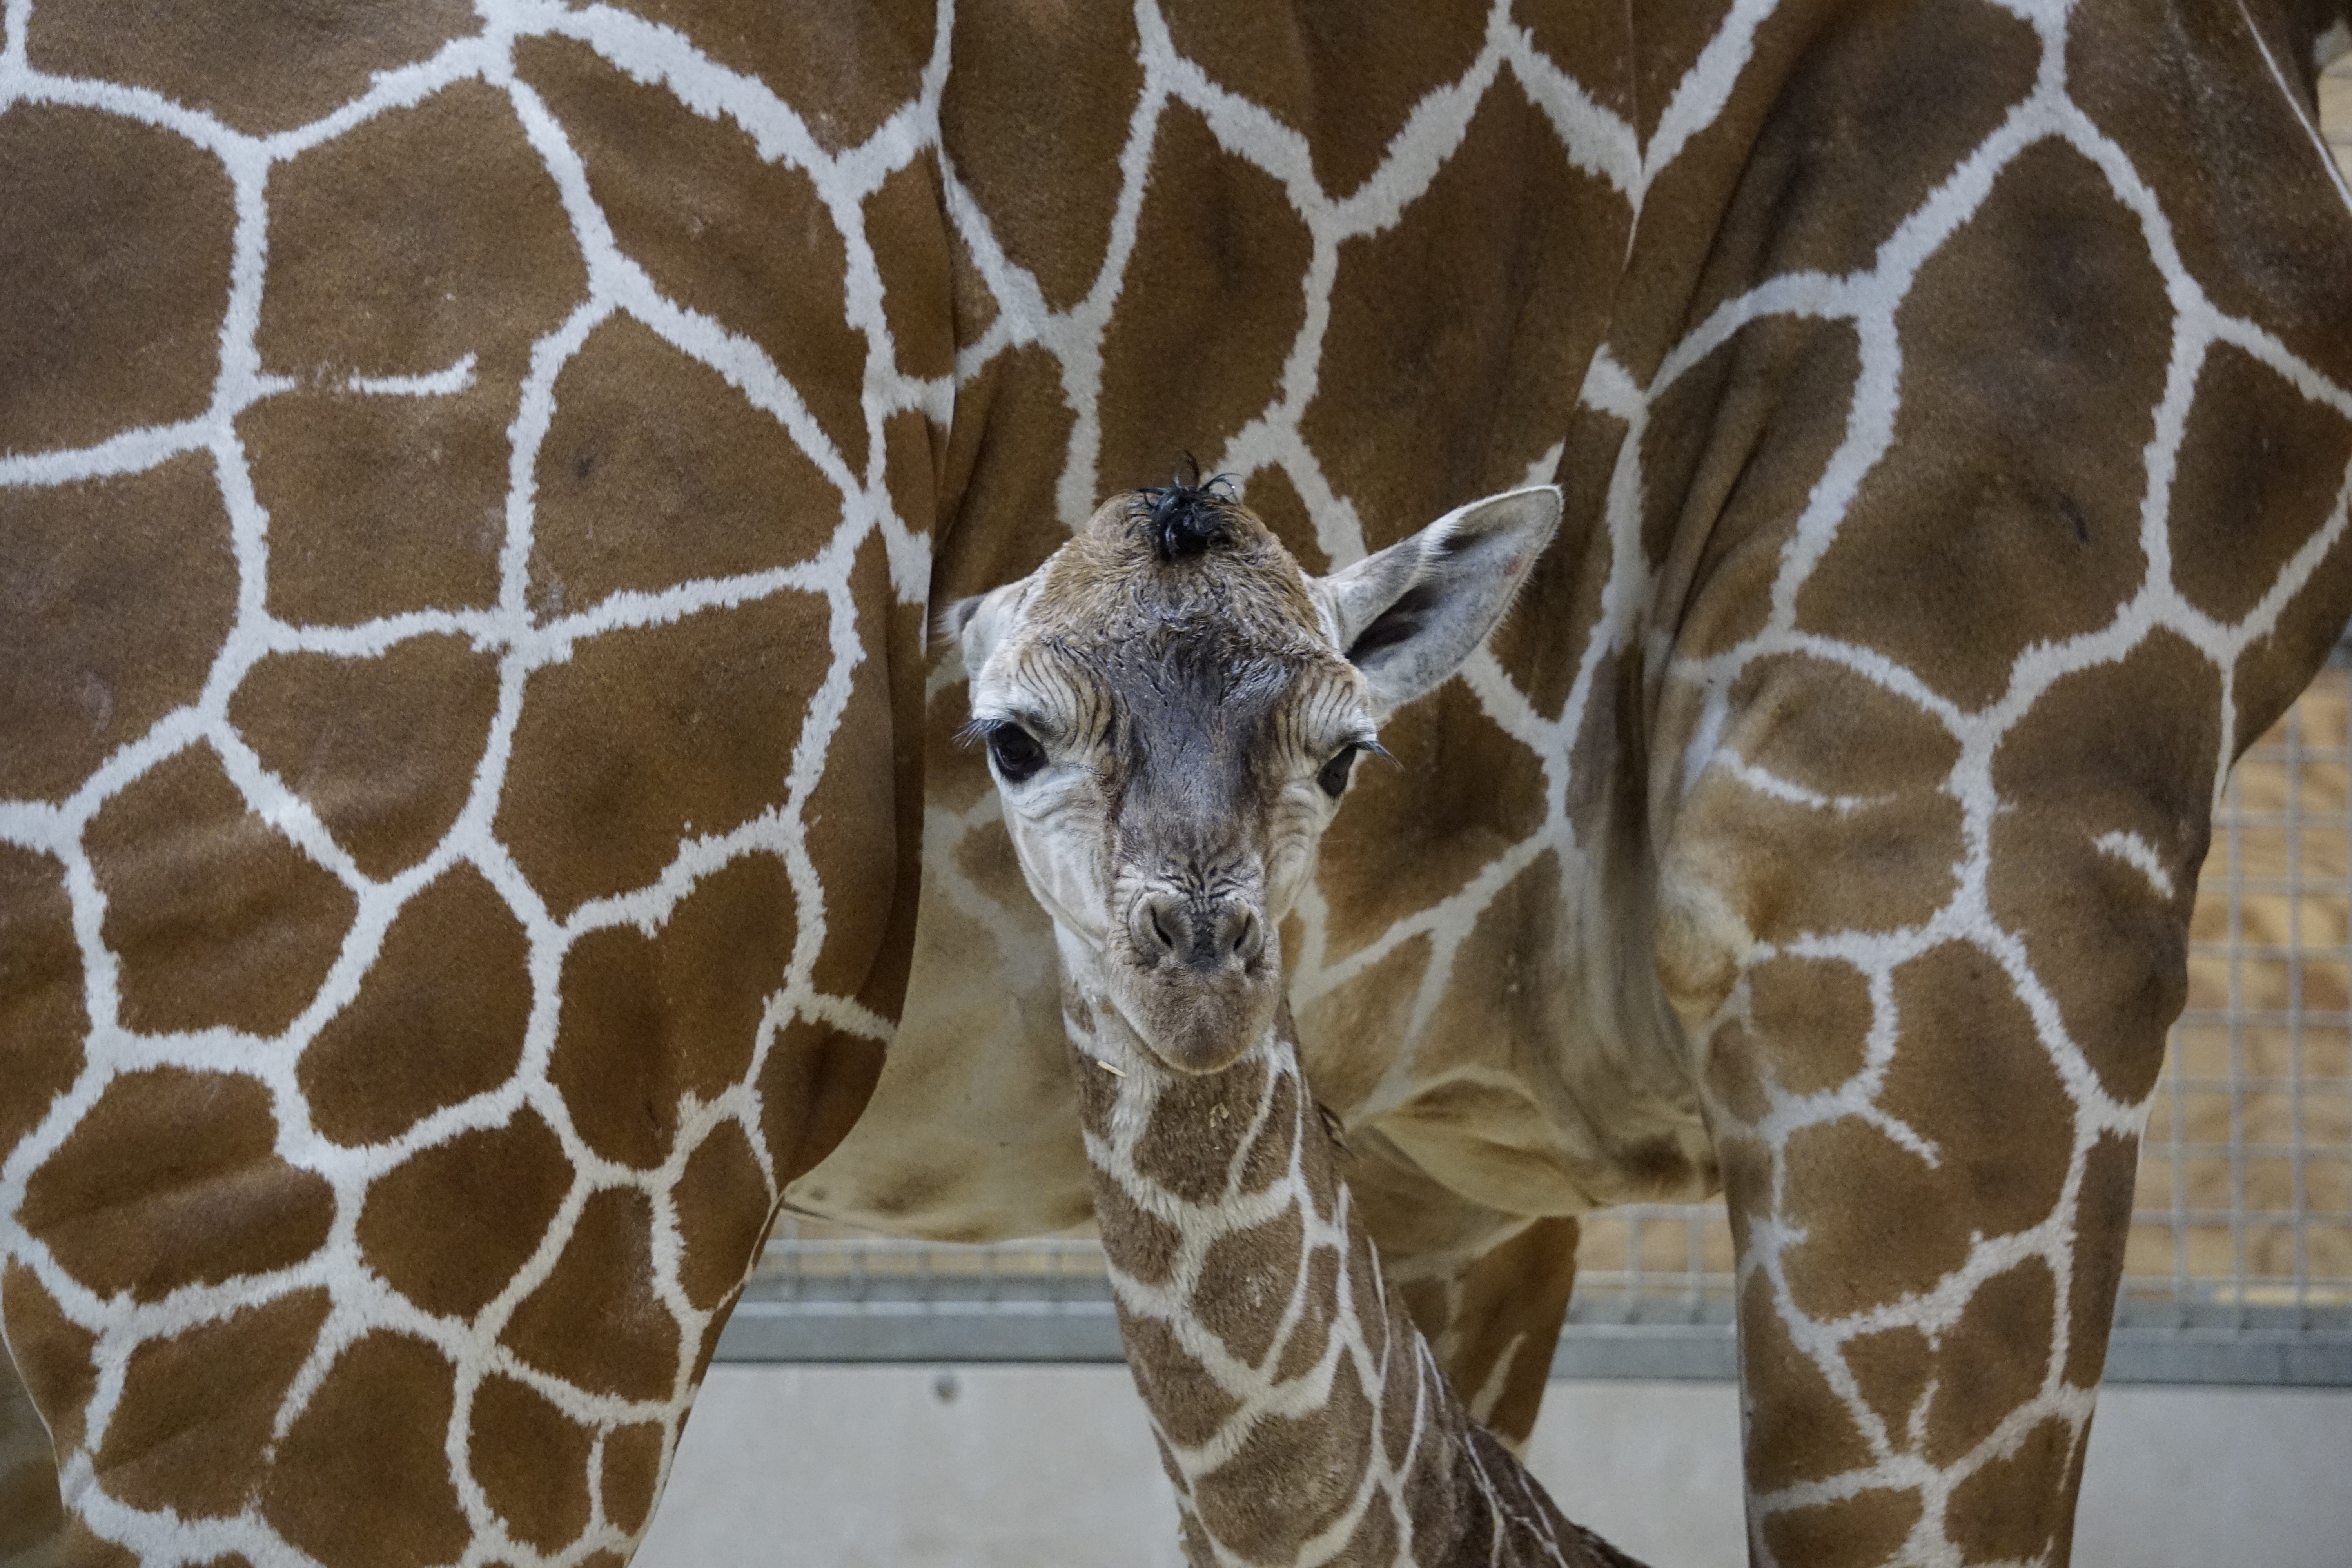 Zoo Welcomes New “Little” Girl